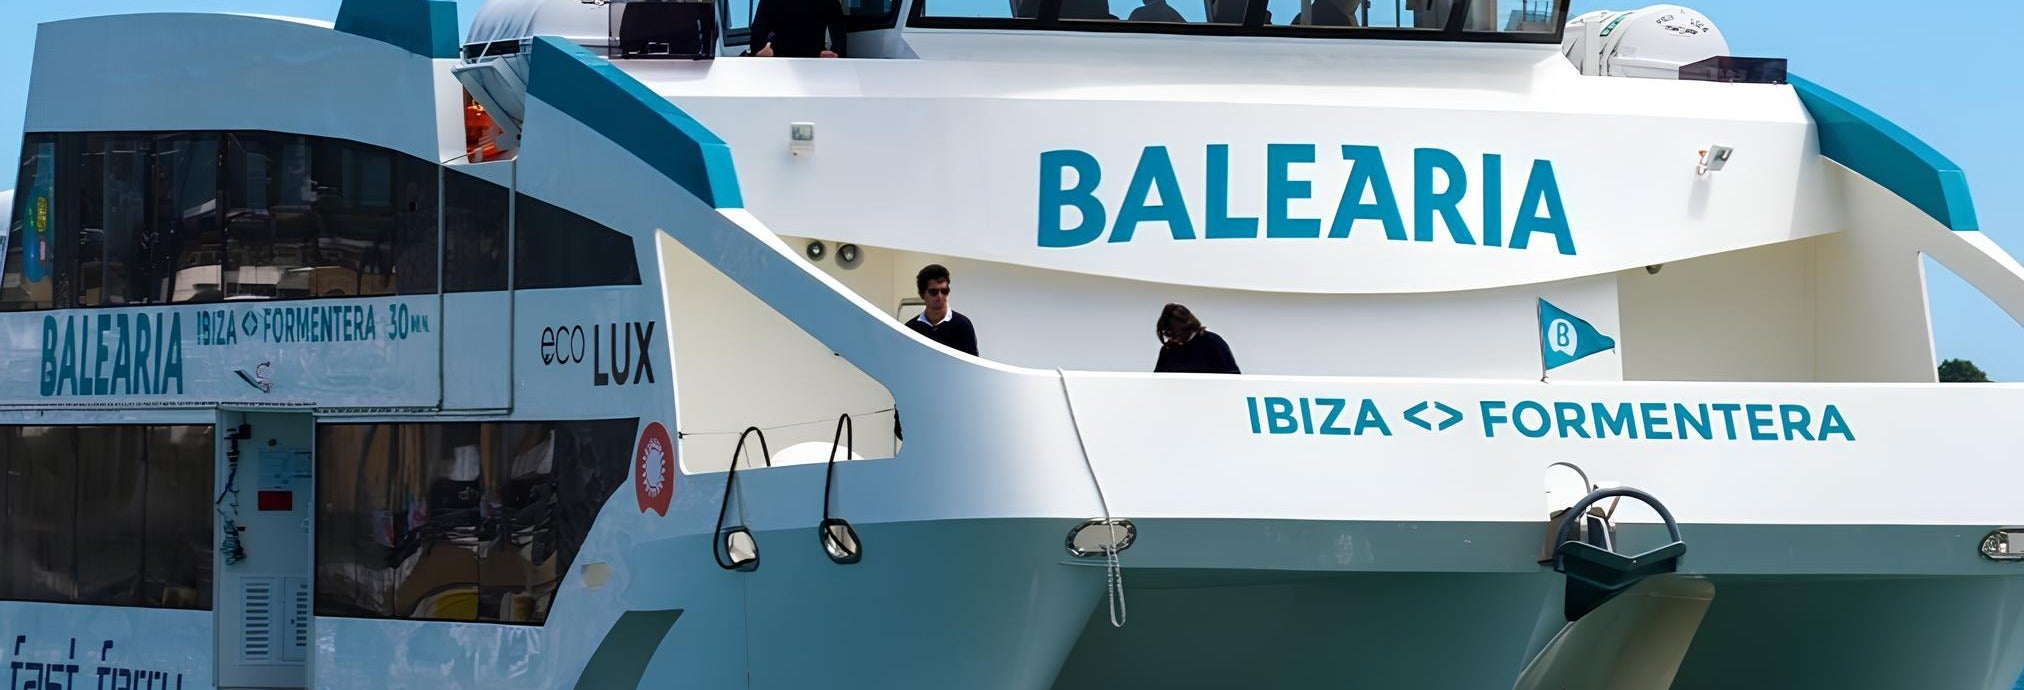 Traghetto per Formentera con Balearia da Ibiza città